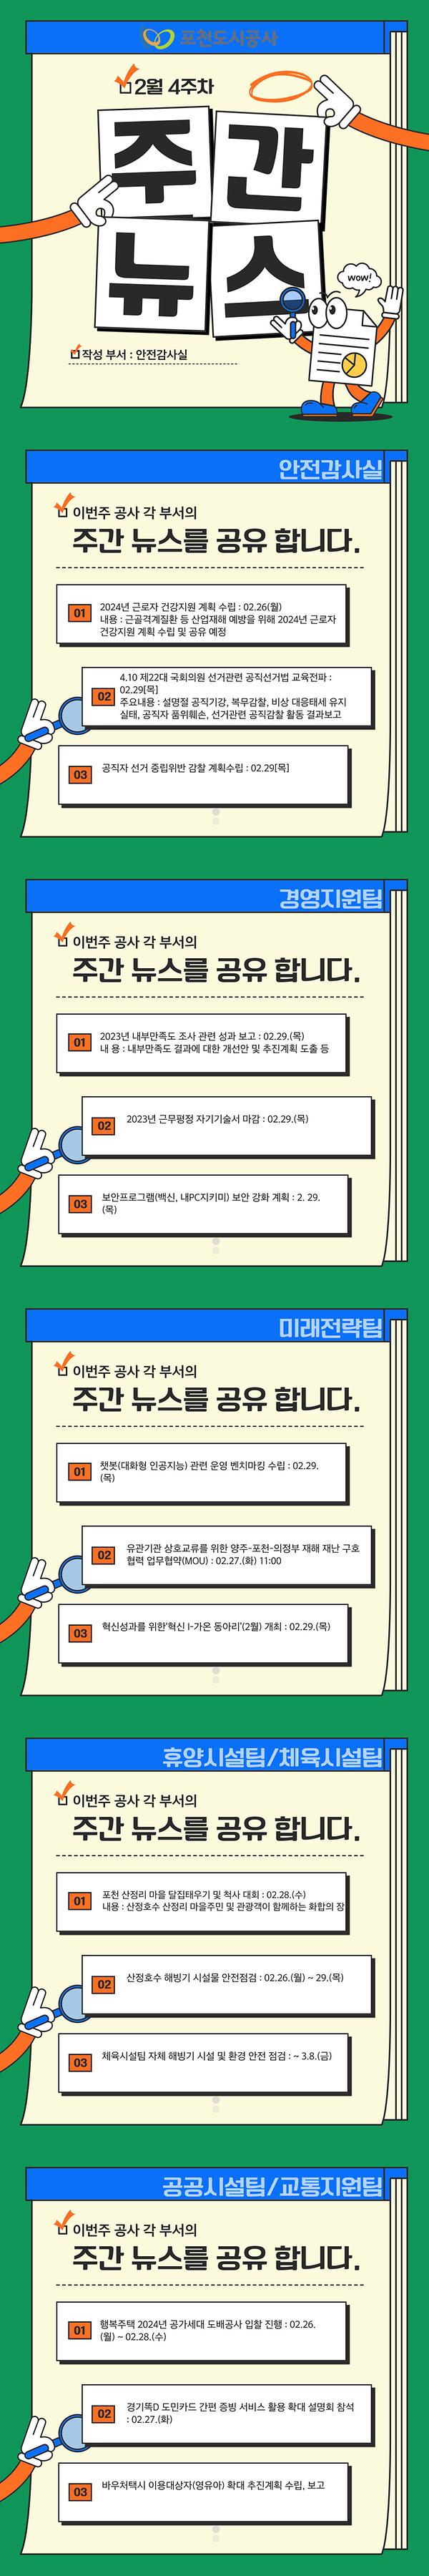 포천도시공사 2월 4주 주간뉴스1